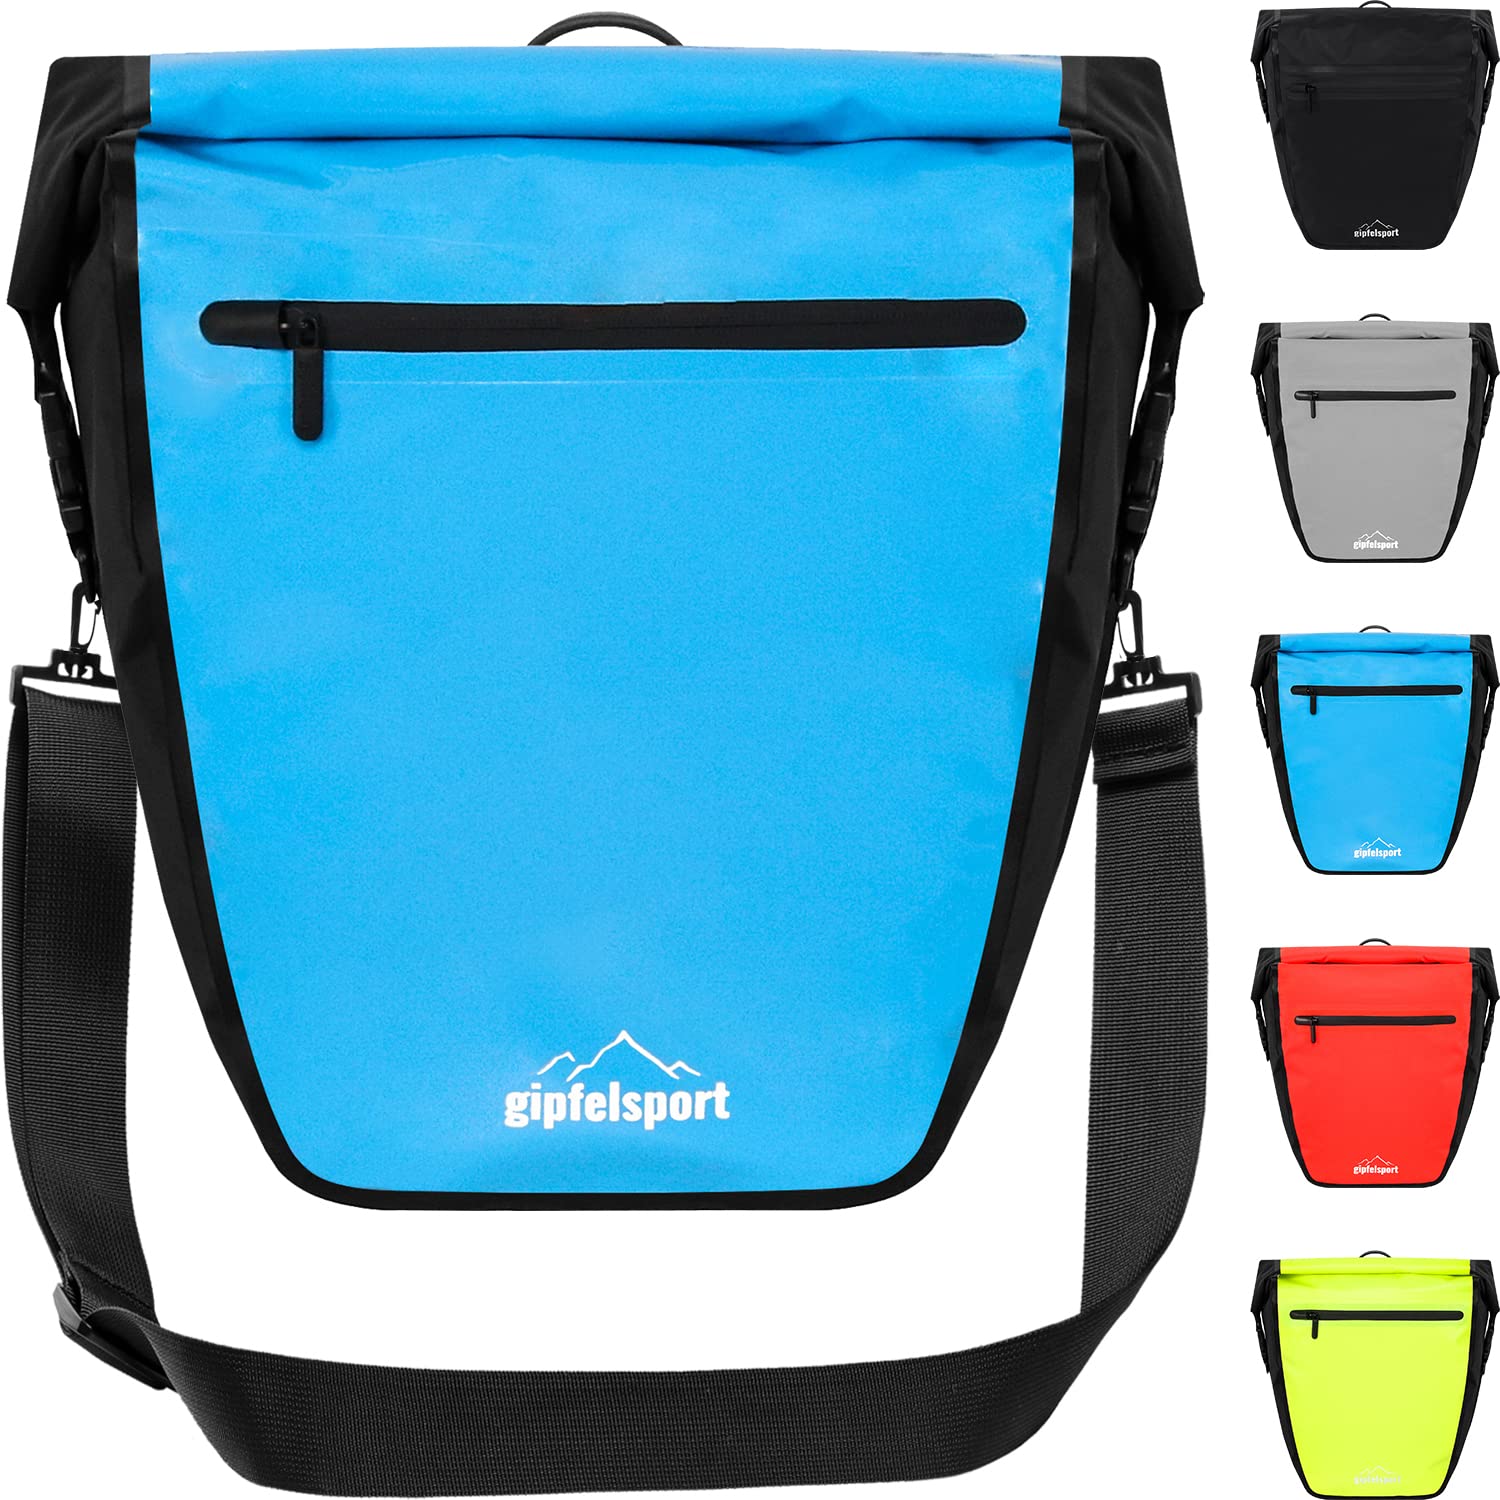 gipfelsport Fahrradtasche für Gepäckträger - Gepäckträgertasche I Fahrradtaschen, Satteltaschen mit 21l Volumen I wasserdicht, reflektierend, blau von gipfelsport